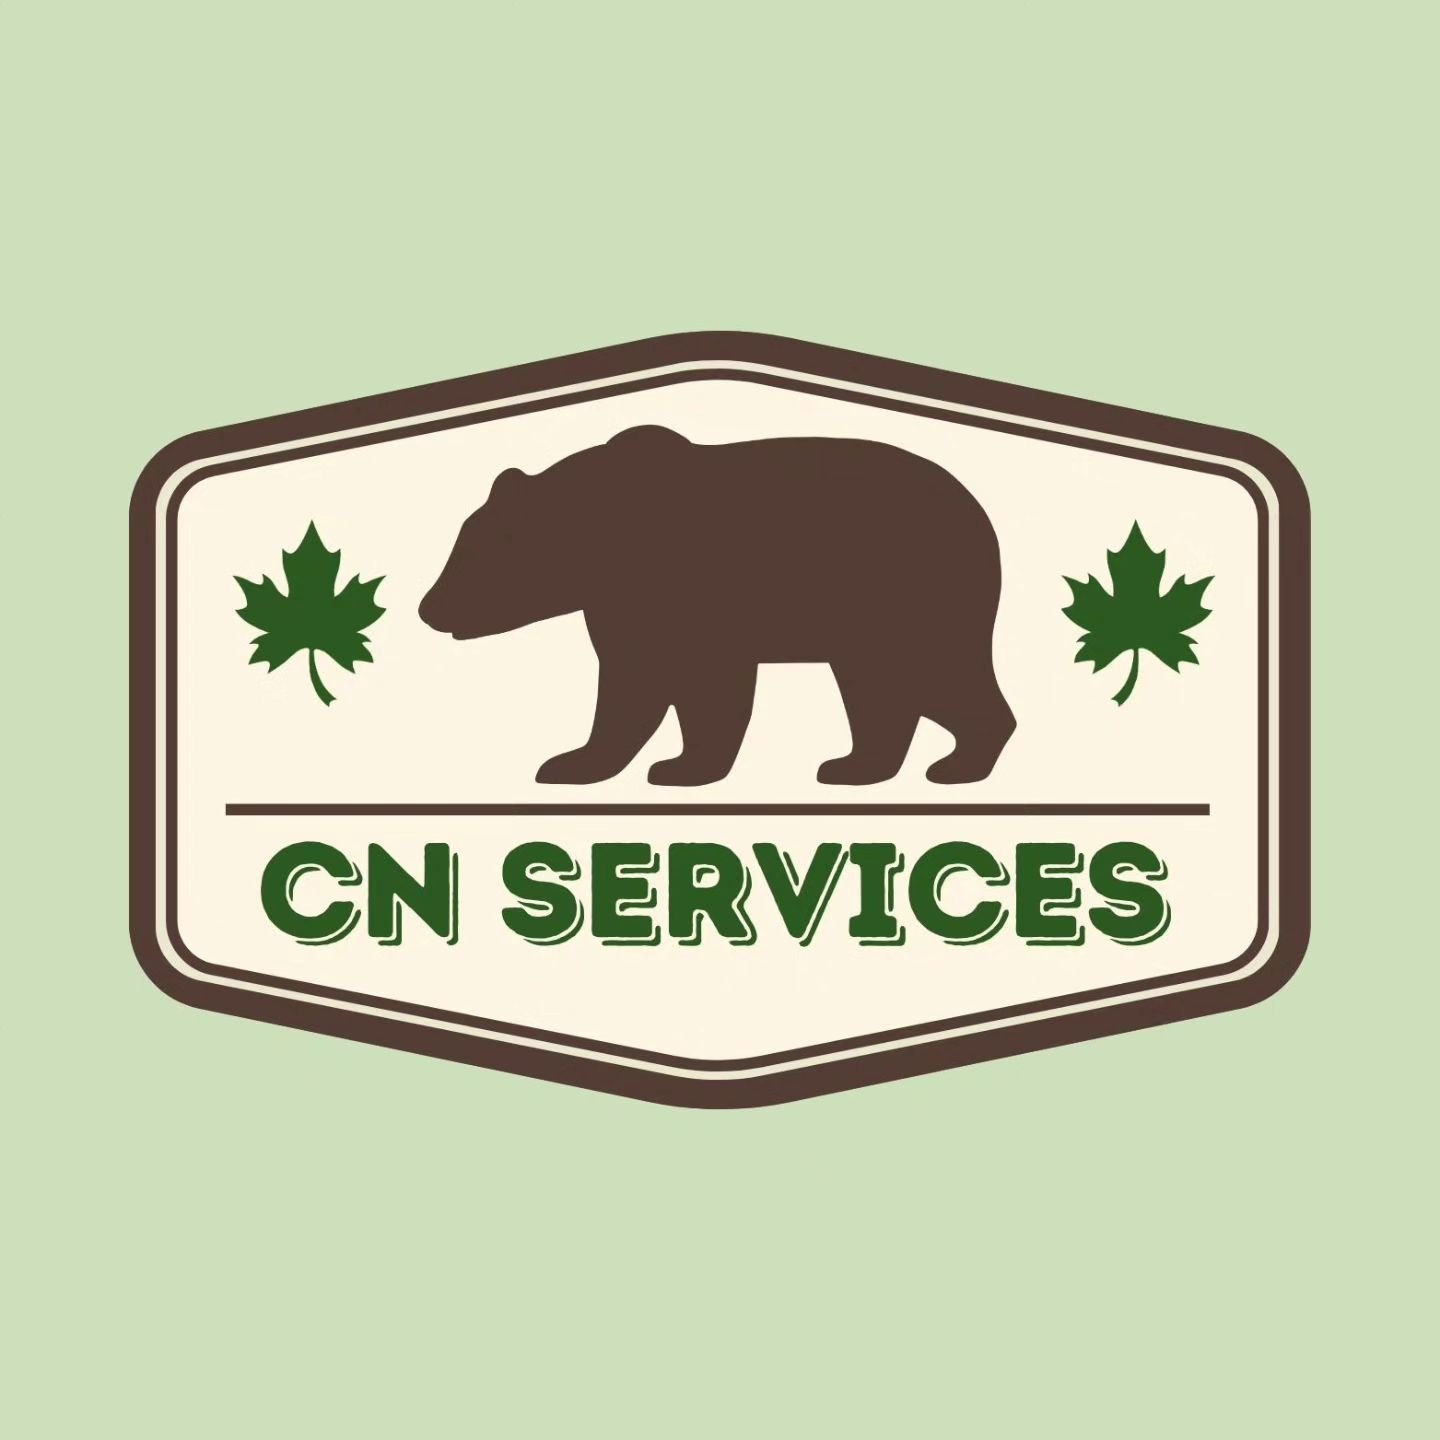 Neues Jahr - neues Logo!

CN SERVICES
- Gartenservice
- Hausmeisterservice
- Montageservice

#cnservices #garten #gartenliebe #gartengl&uuml;ck #gardening #nature #gartenarbeit #gardenlove #instagarden